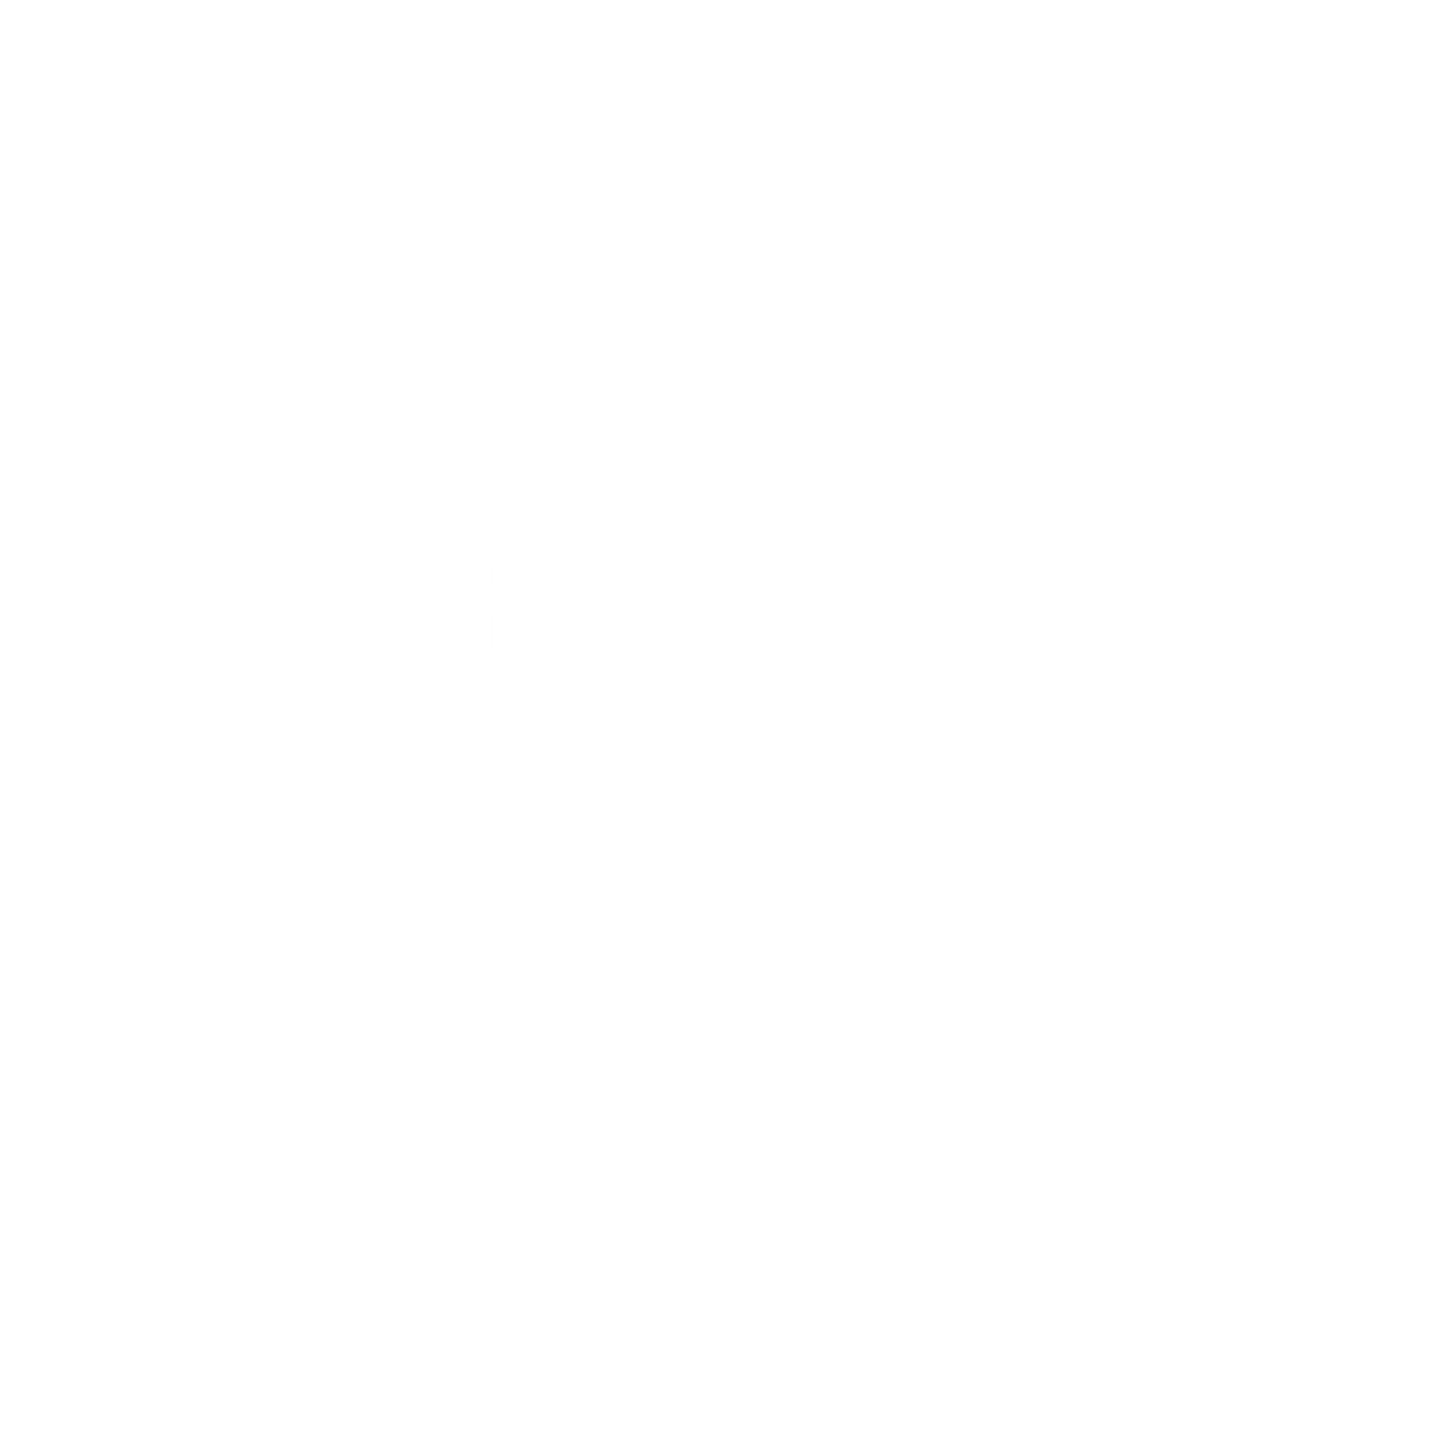 Zombie Response Team Kill Or Be Eaten